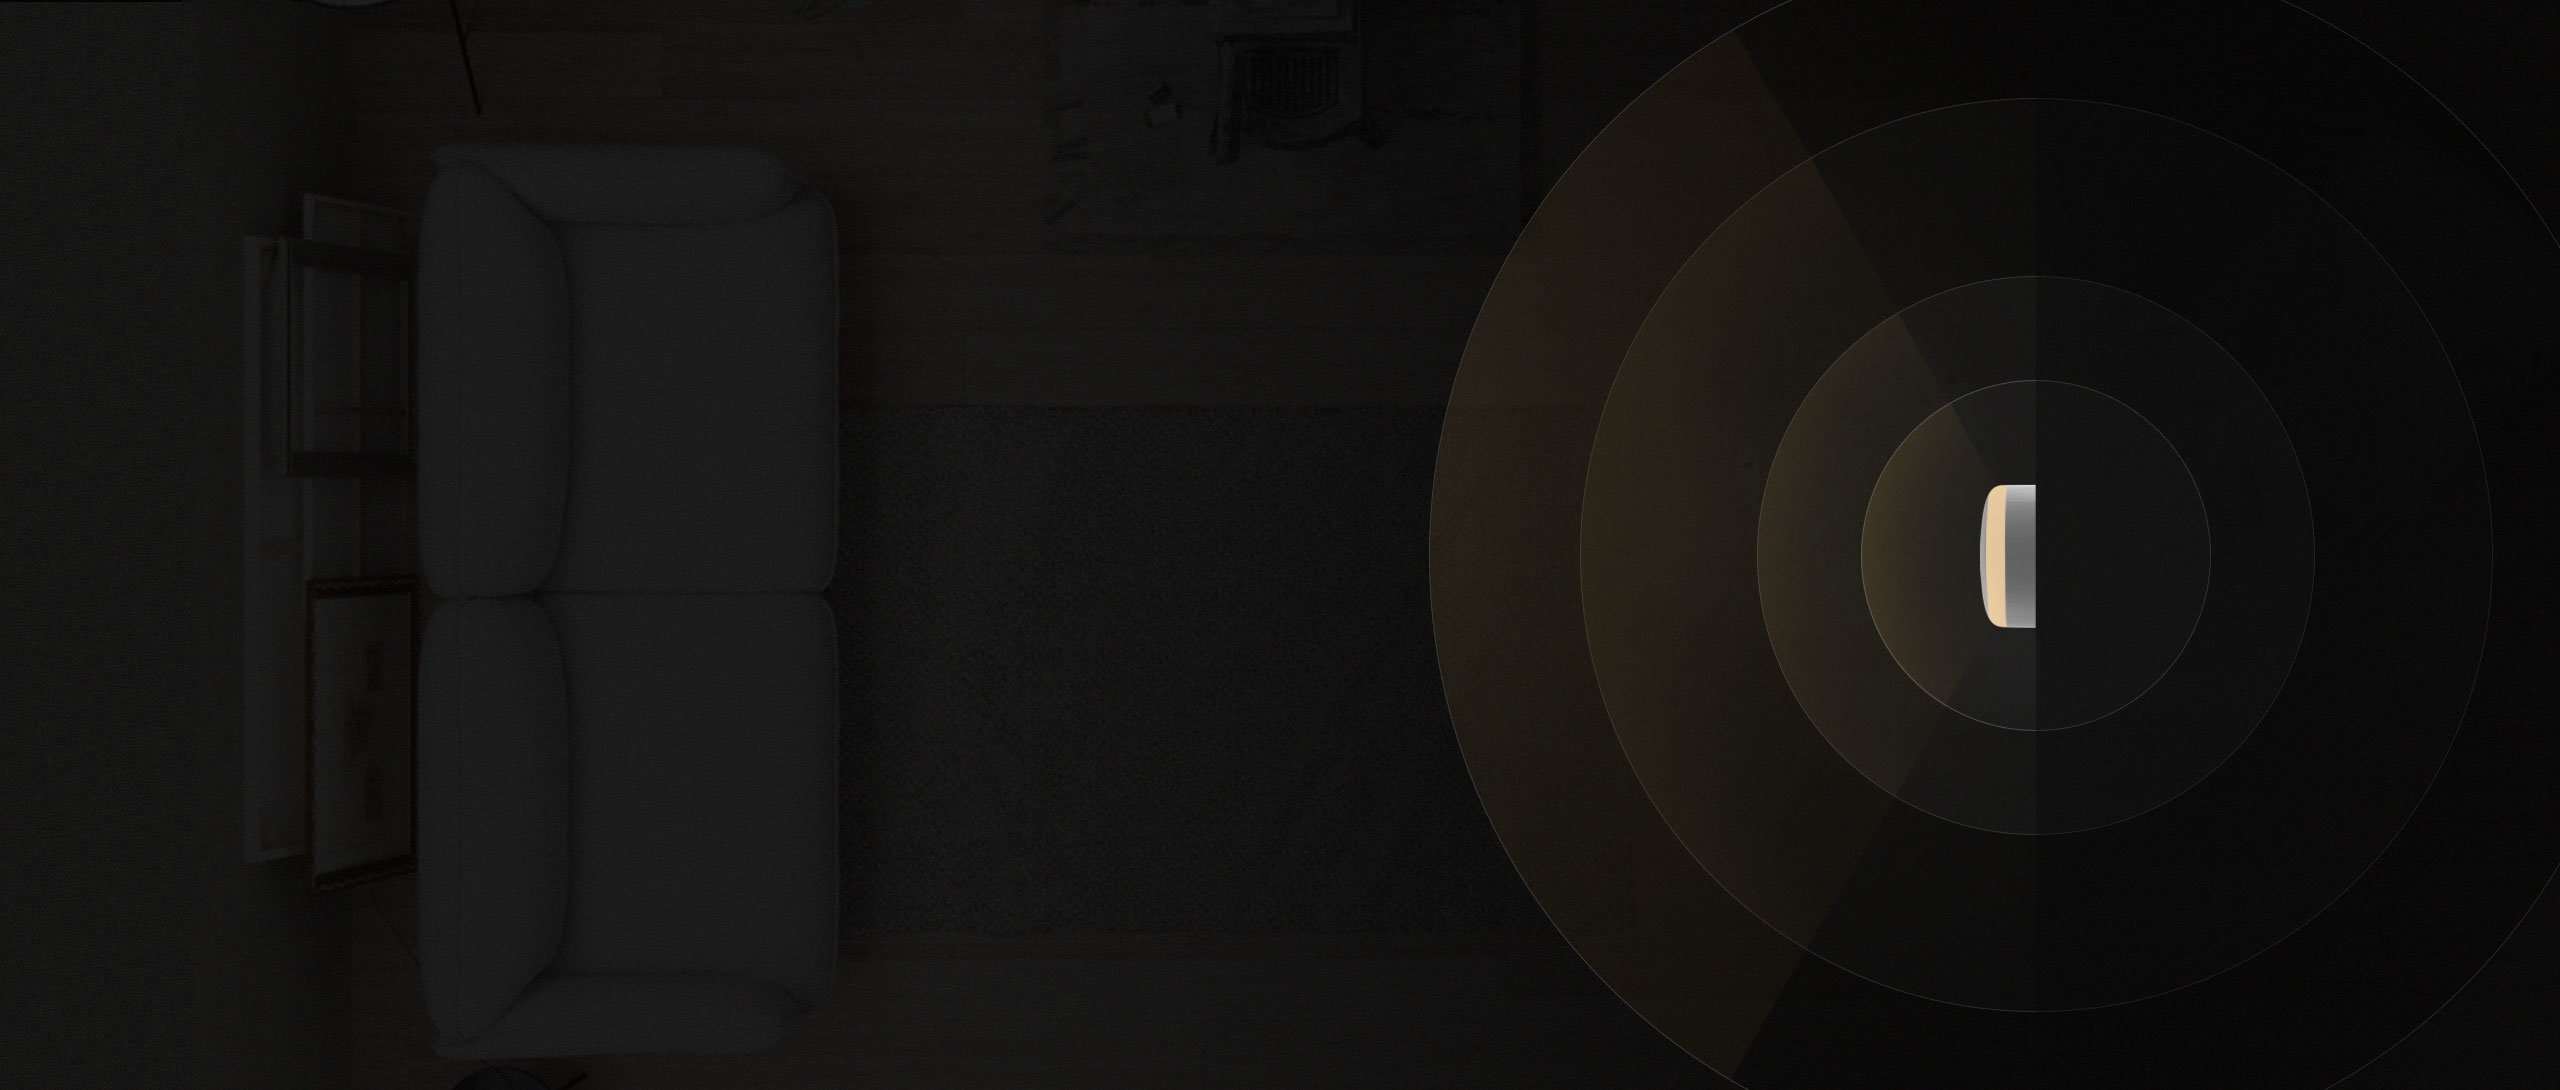 Lampka nocna Xiaomi Mi Mi Motion-Activated Night Light biała wizualizacja mocy świecenia